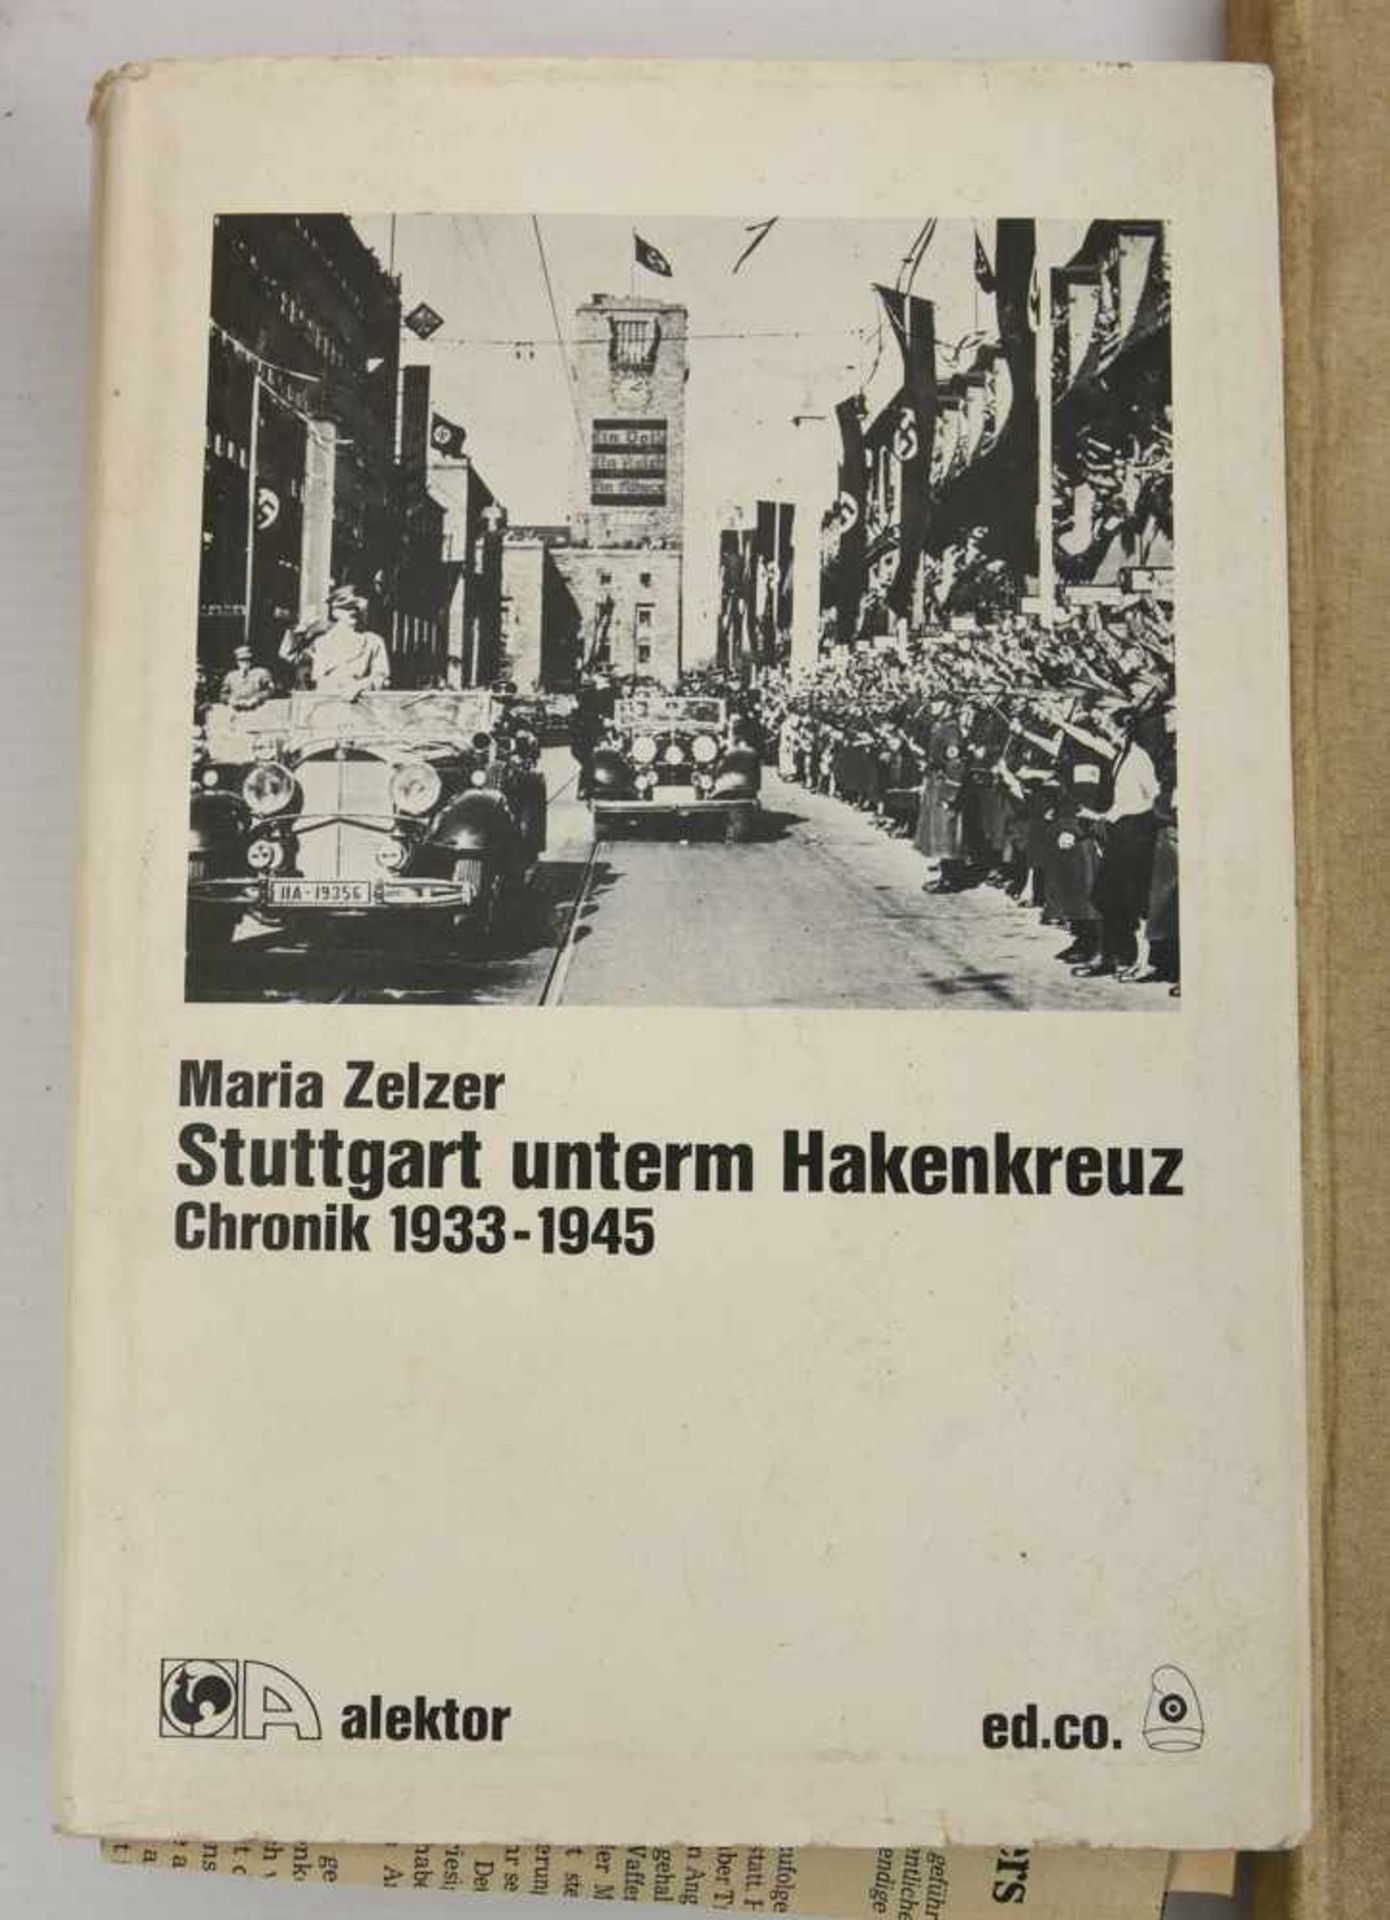 BÜCHER-KONVOLUT "STUTTGART", diverse Sachbücher/Monografien, Deutsches Reich/BRD 1889- 1984 Konvolut - Image 5 of 10